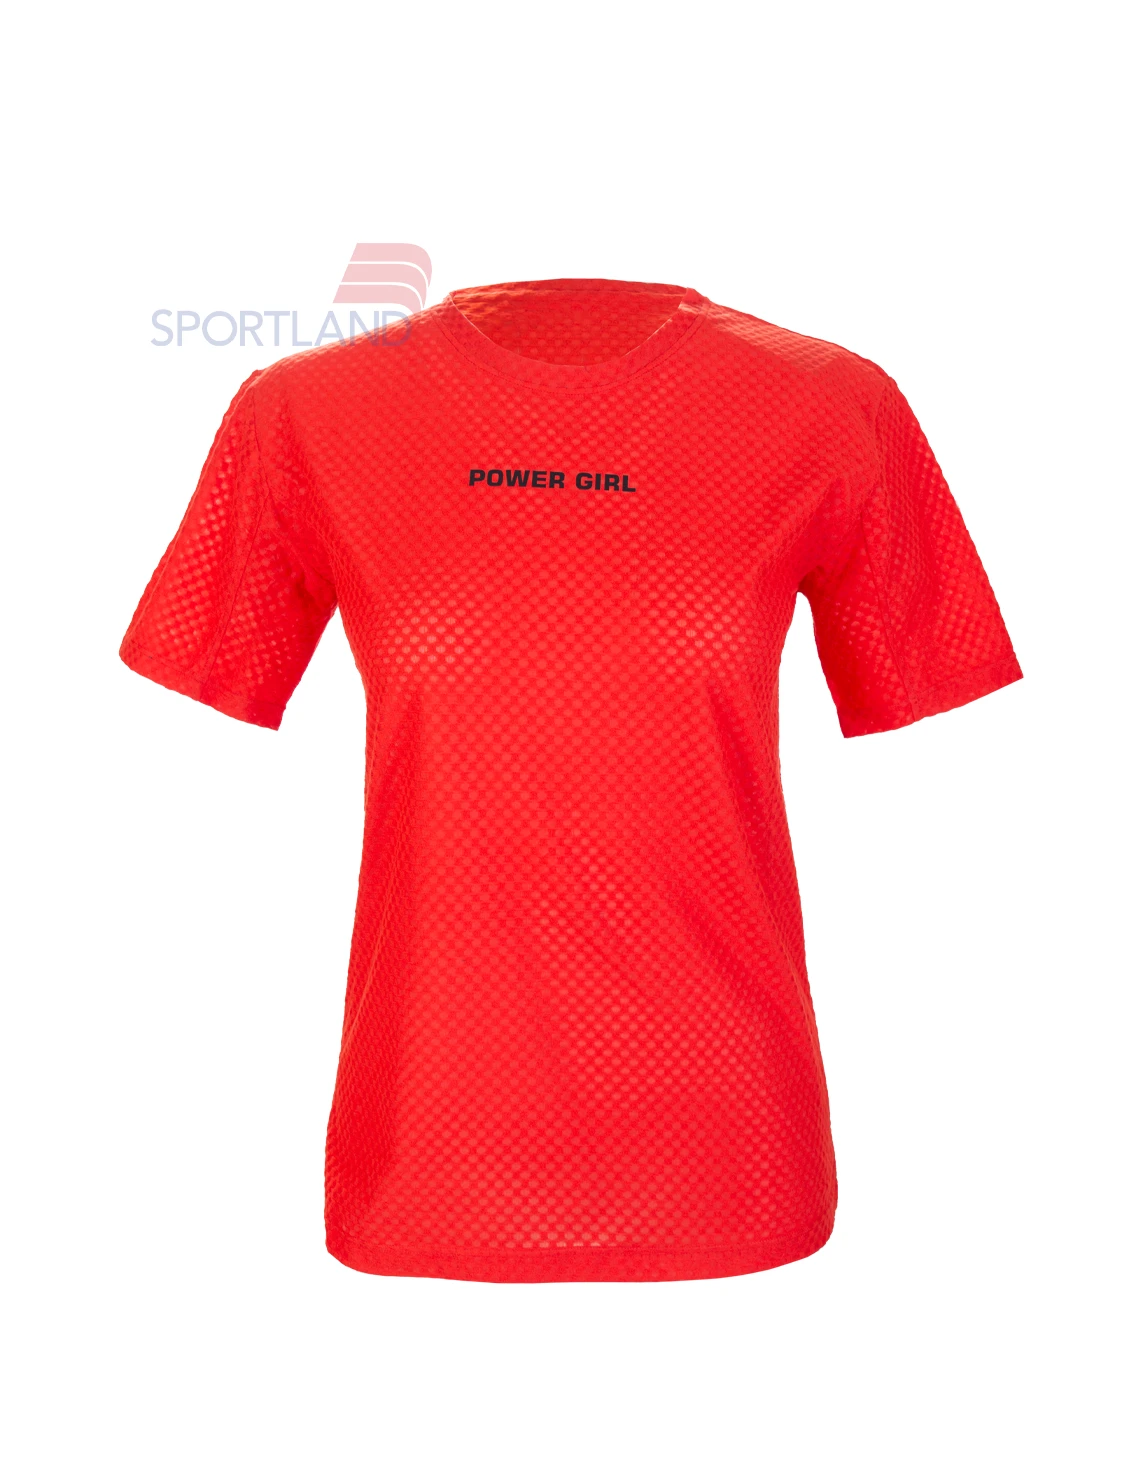 تی شرت ورزشی زنانه اسپورتلند Athleto W